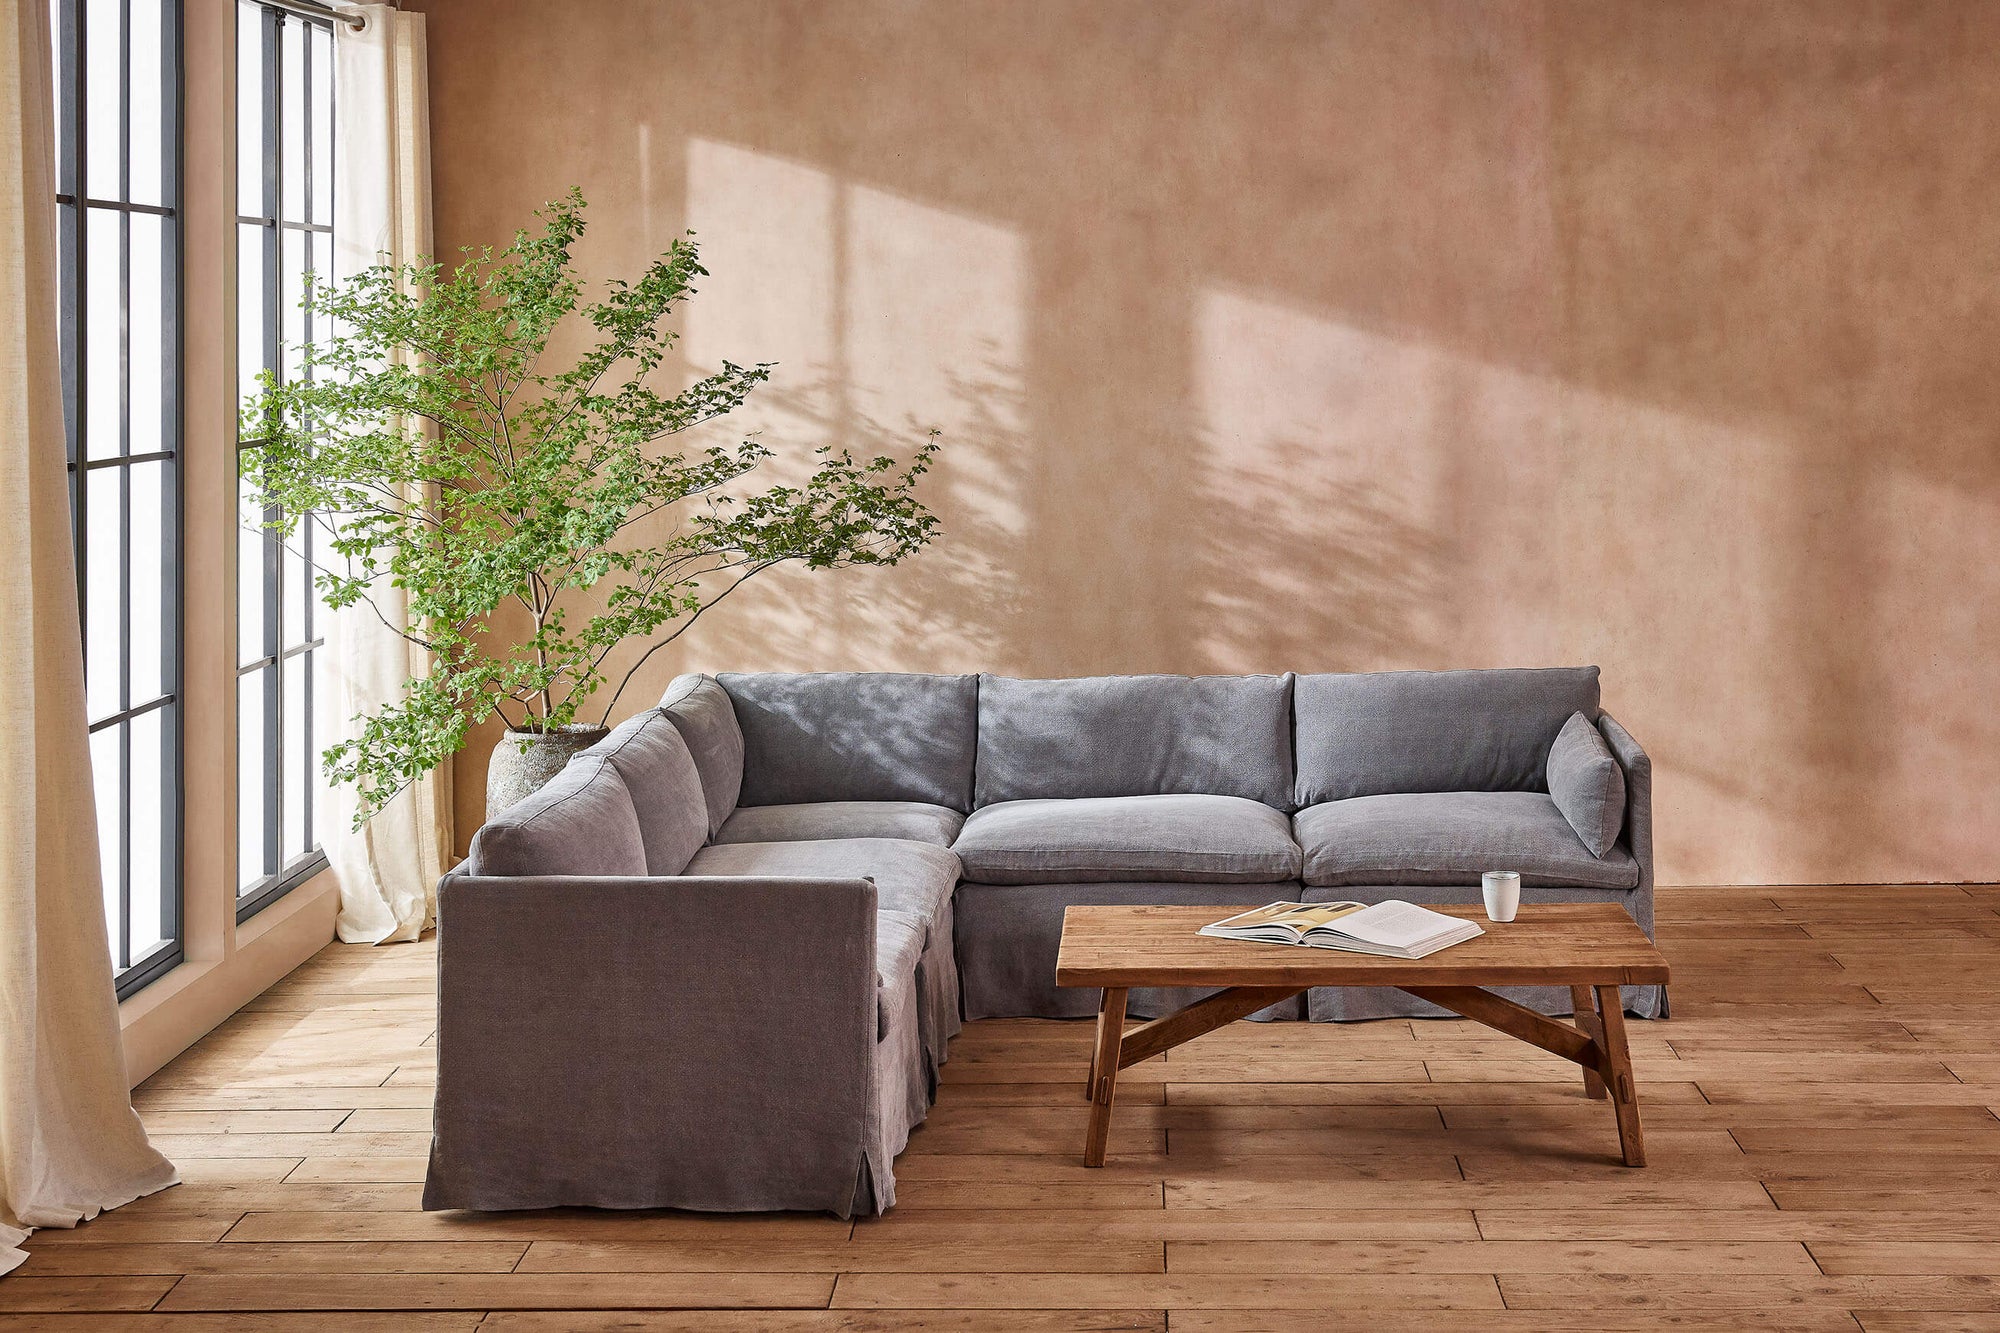 Gabriel Corner Sectional Sofa in Ink Cap, a medium cool grey Light Weight Linen